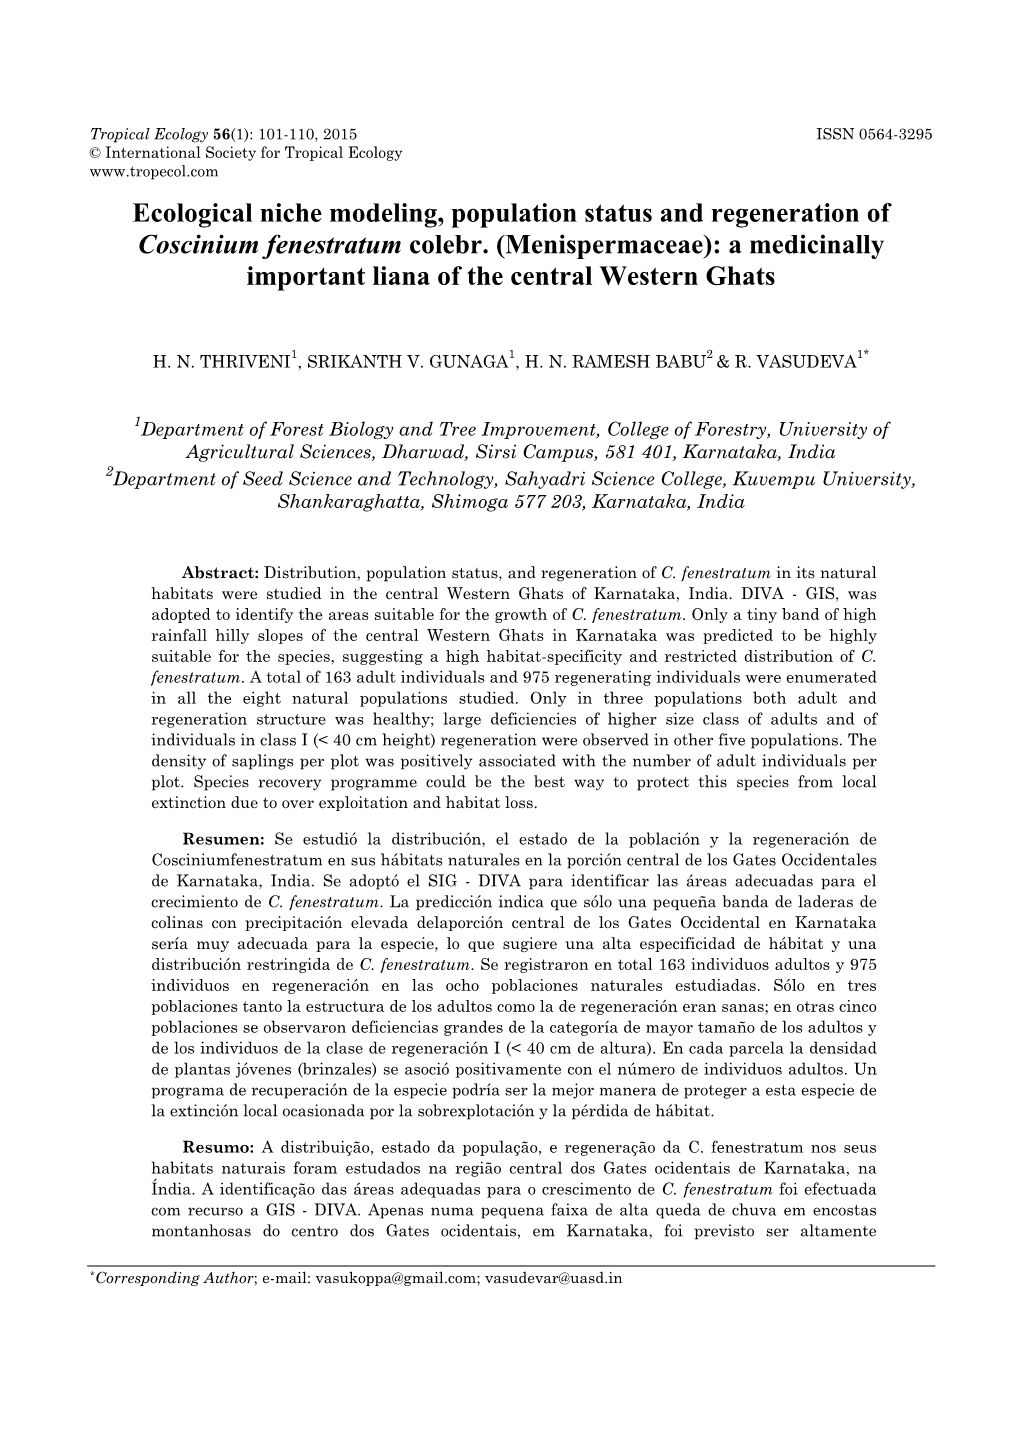 Ecological Niche Modeling, Population Status and Regeneration of Coscinium Fenestratum Colebr